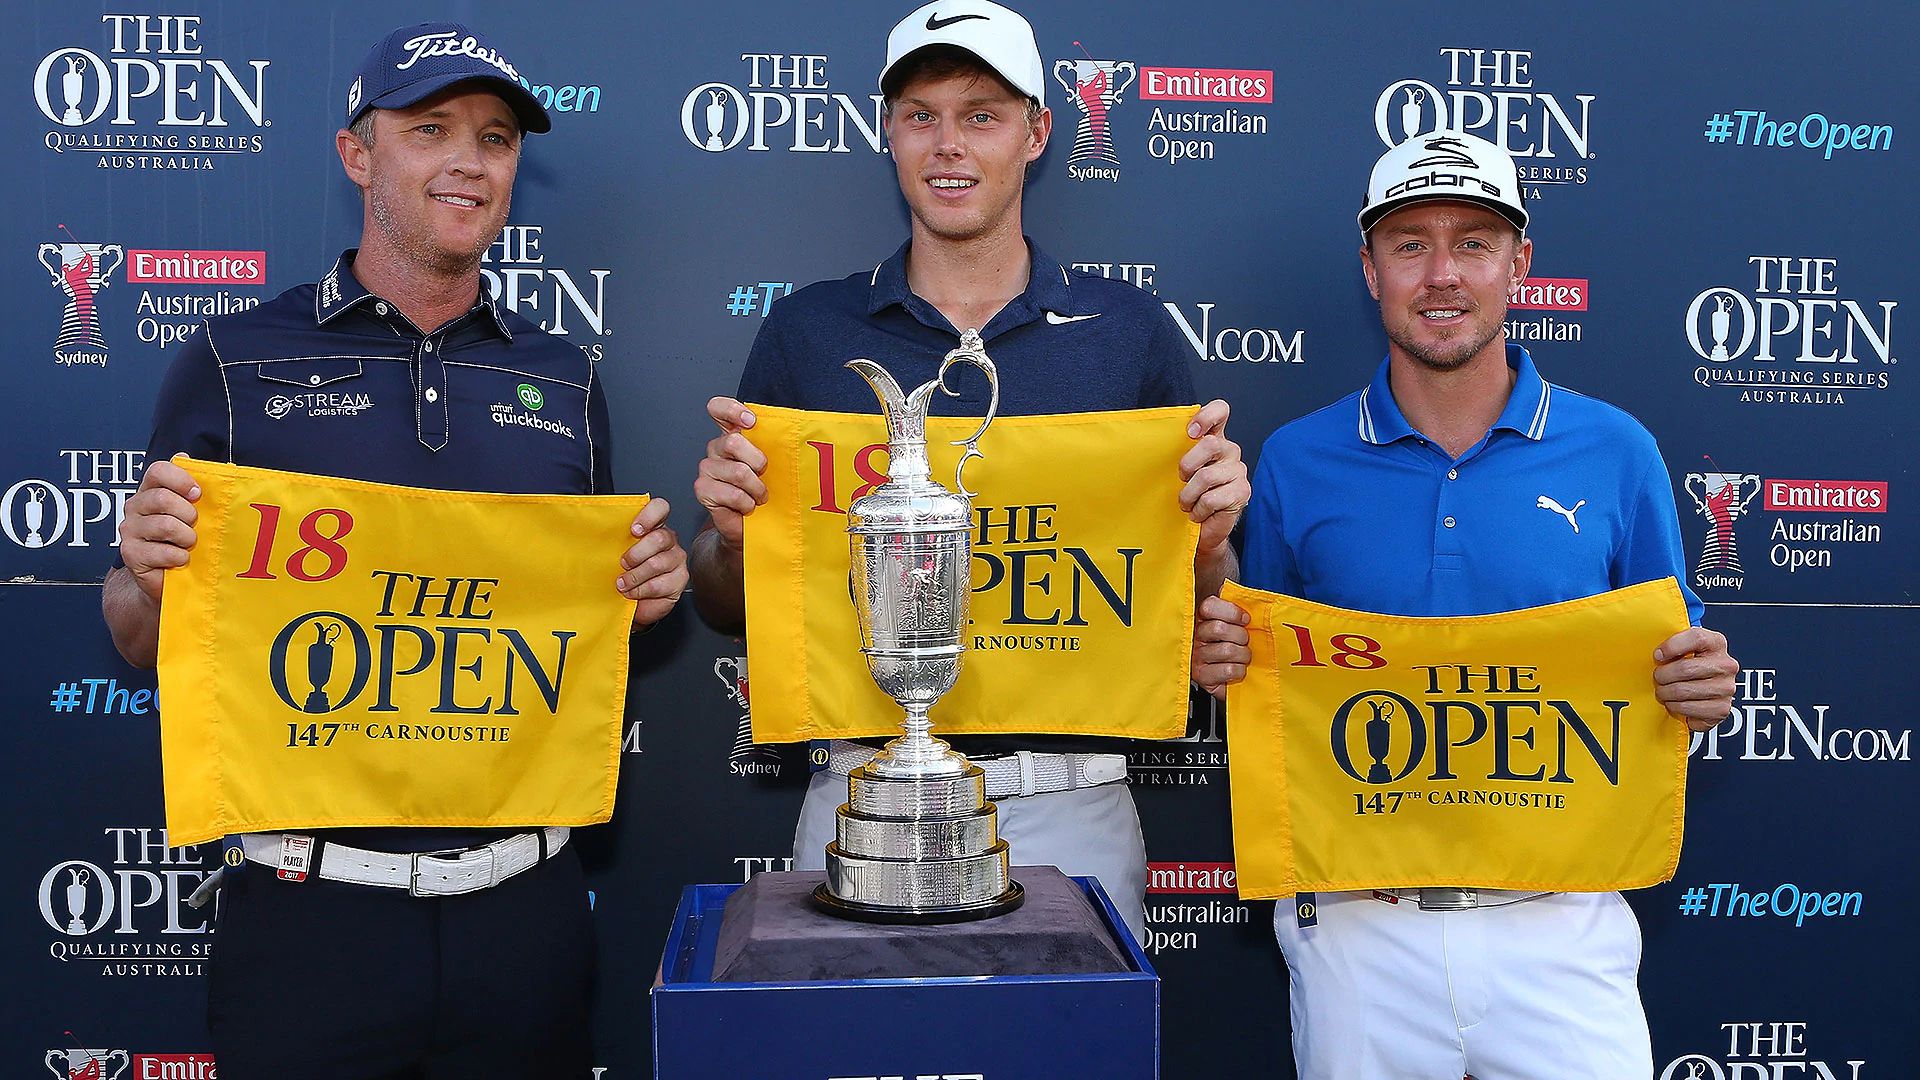 Davis, Blixt, Jones qualify for The Open in Australia